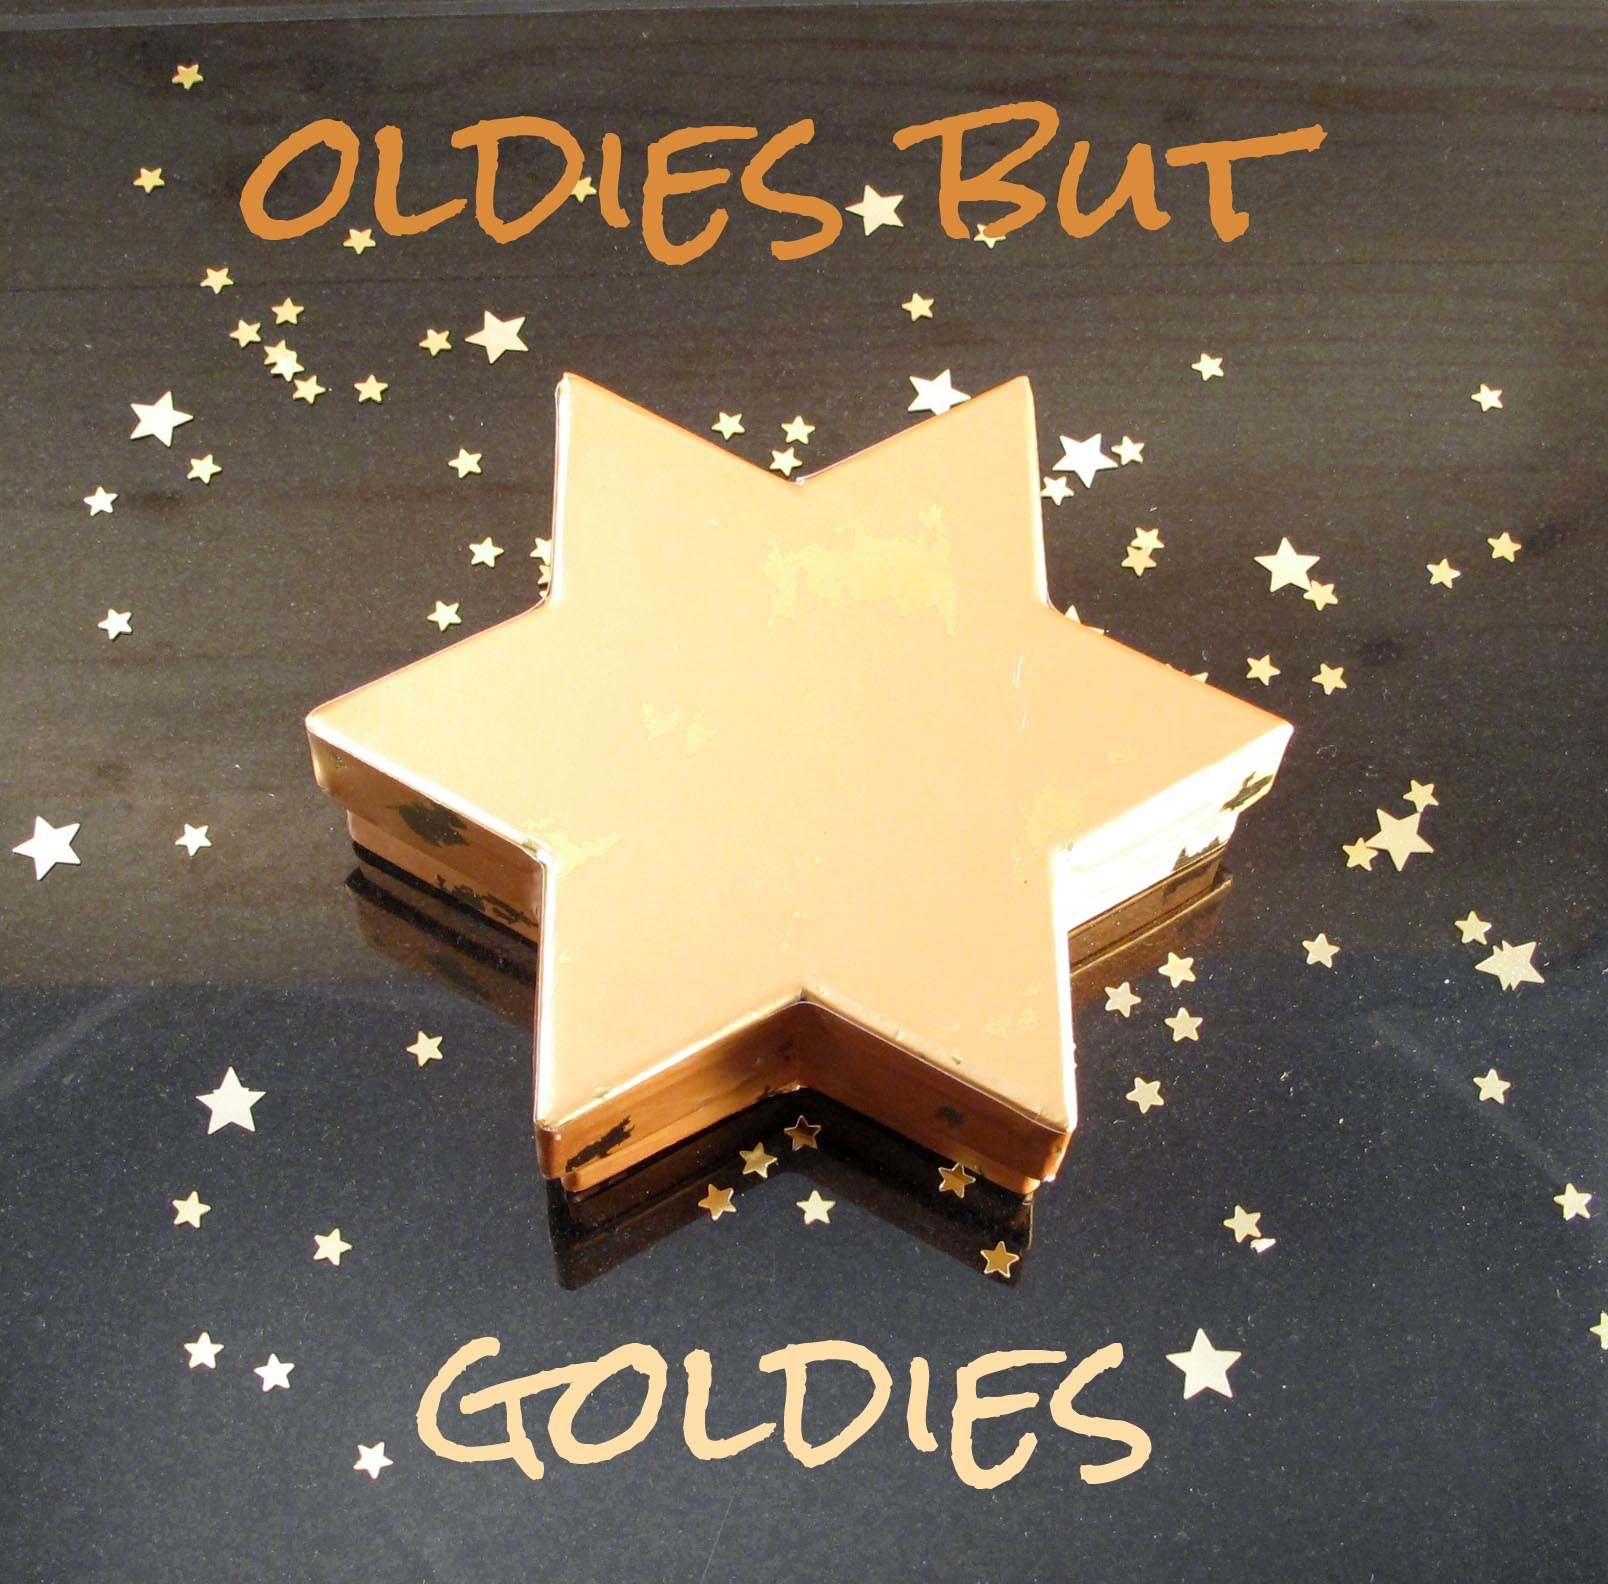 Oldies-but-Goldies-the-one-Kopie